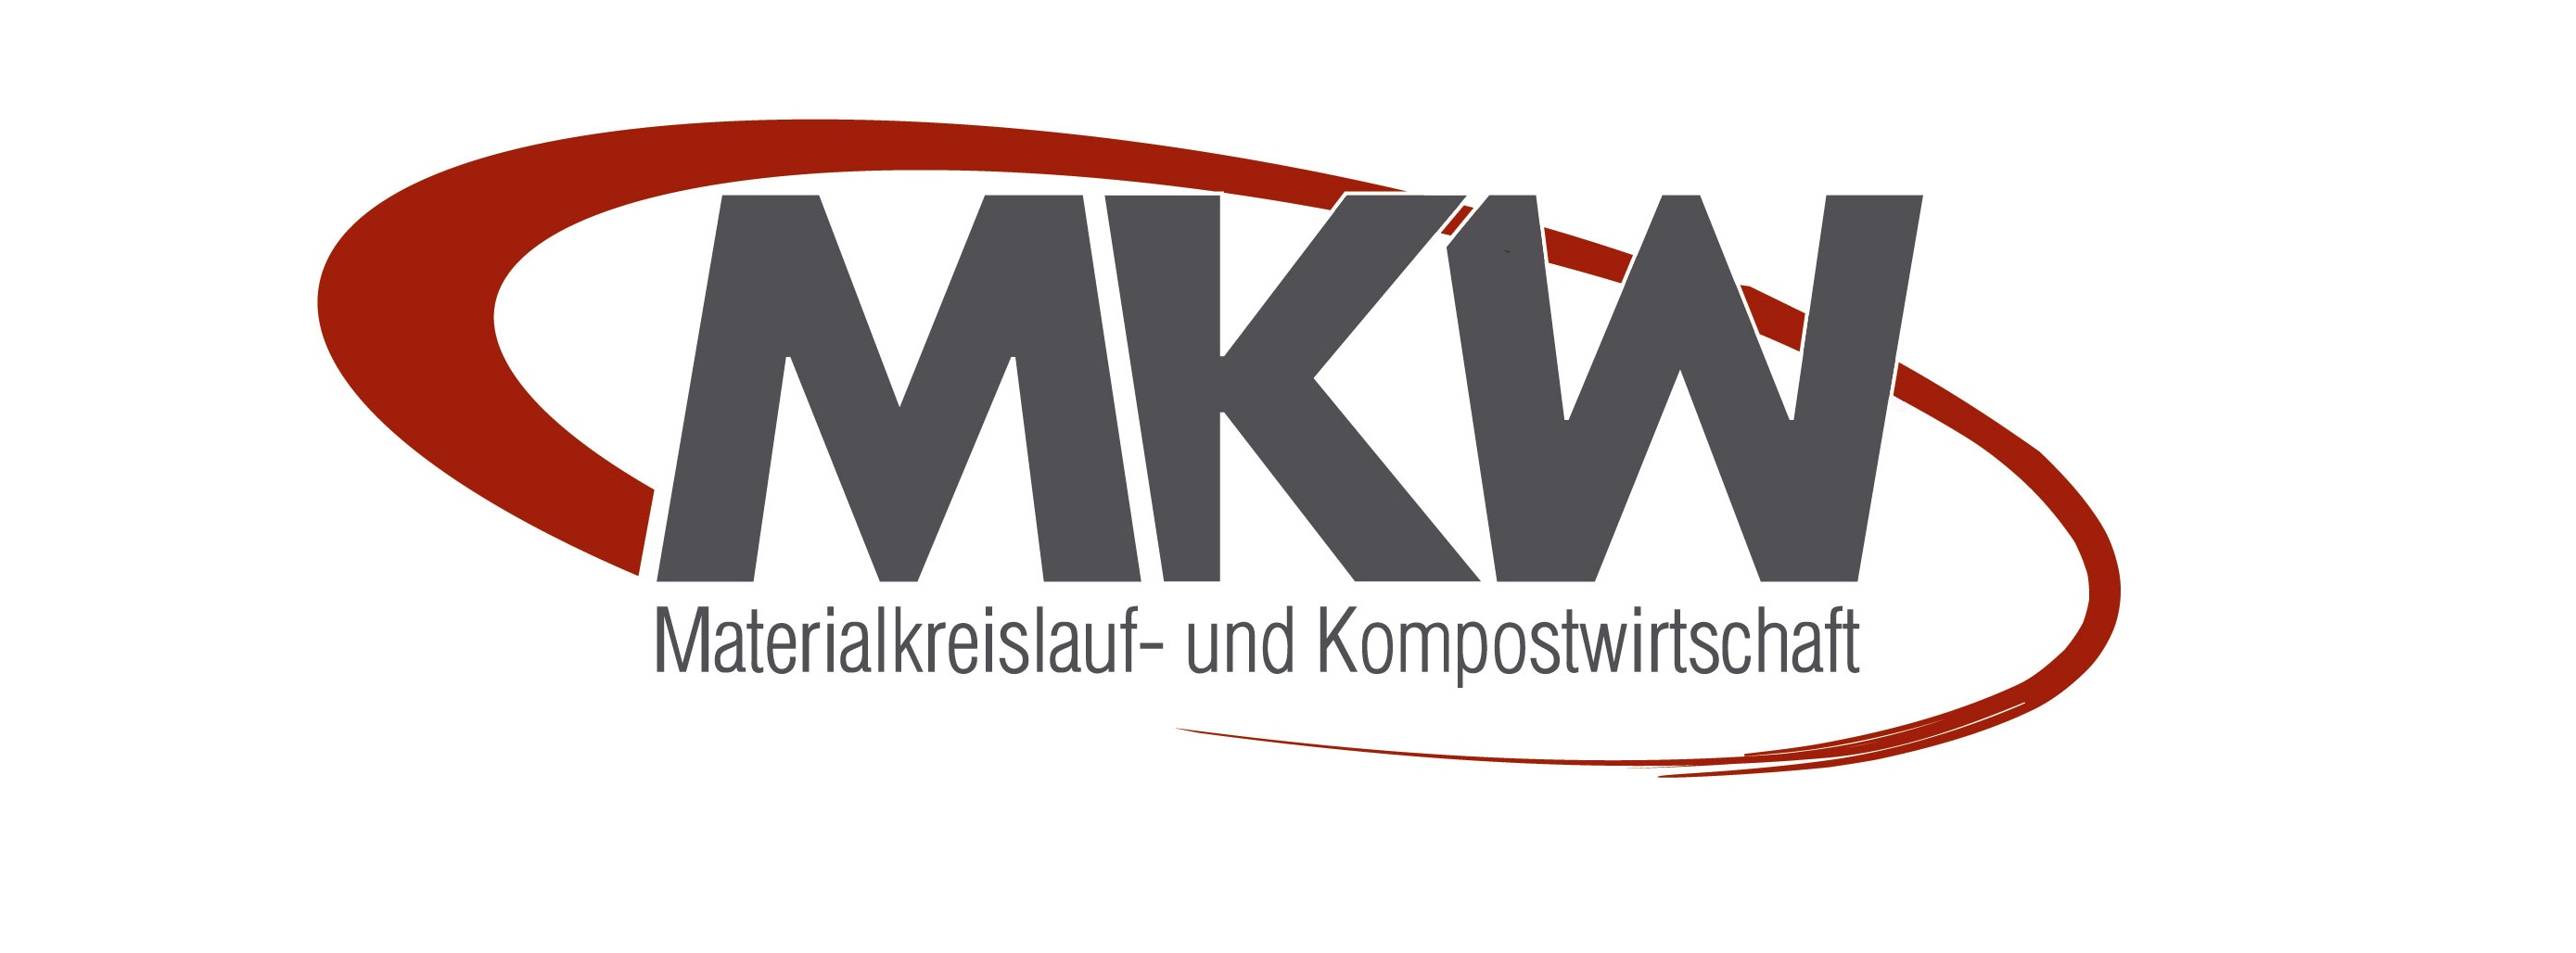 MKW – Materialkreislauf- und Kompostwirtschaft GmbH & Co. KG